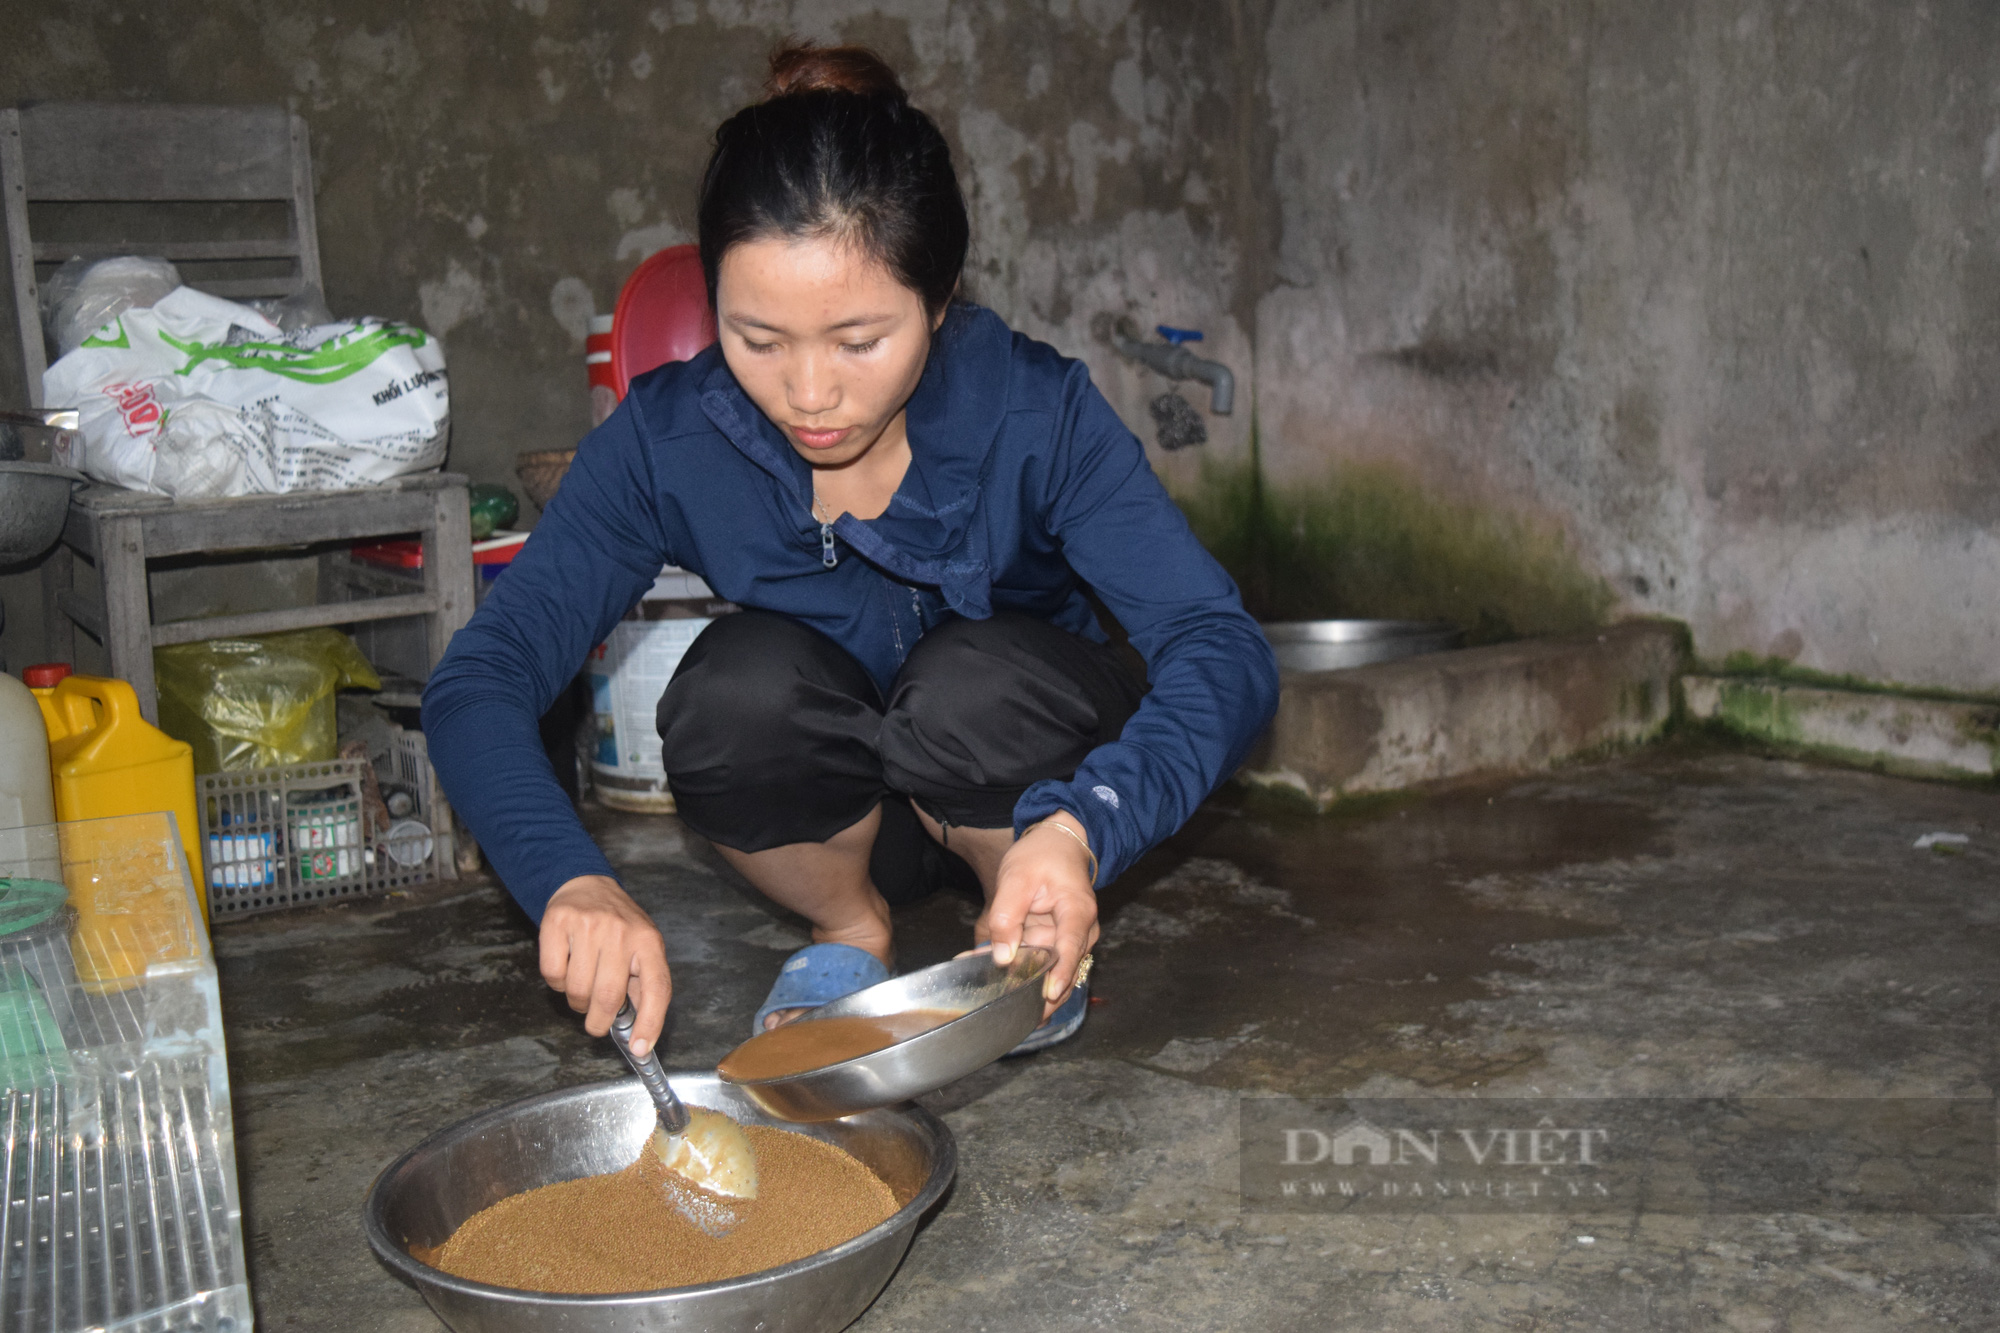 Quảng Bình: Nông dân 9x nuôi lươn trong bể xi măng, vụ đầu tiên đã thu về gần 200 triệu đồng - Ảnh 3.